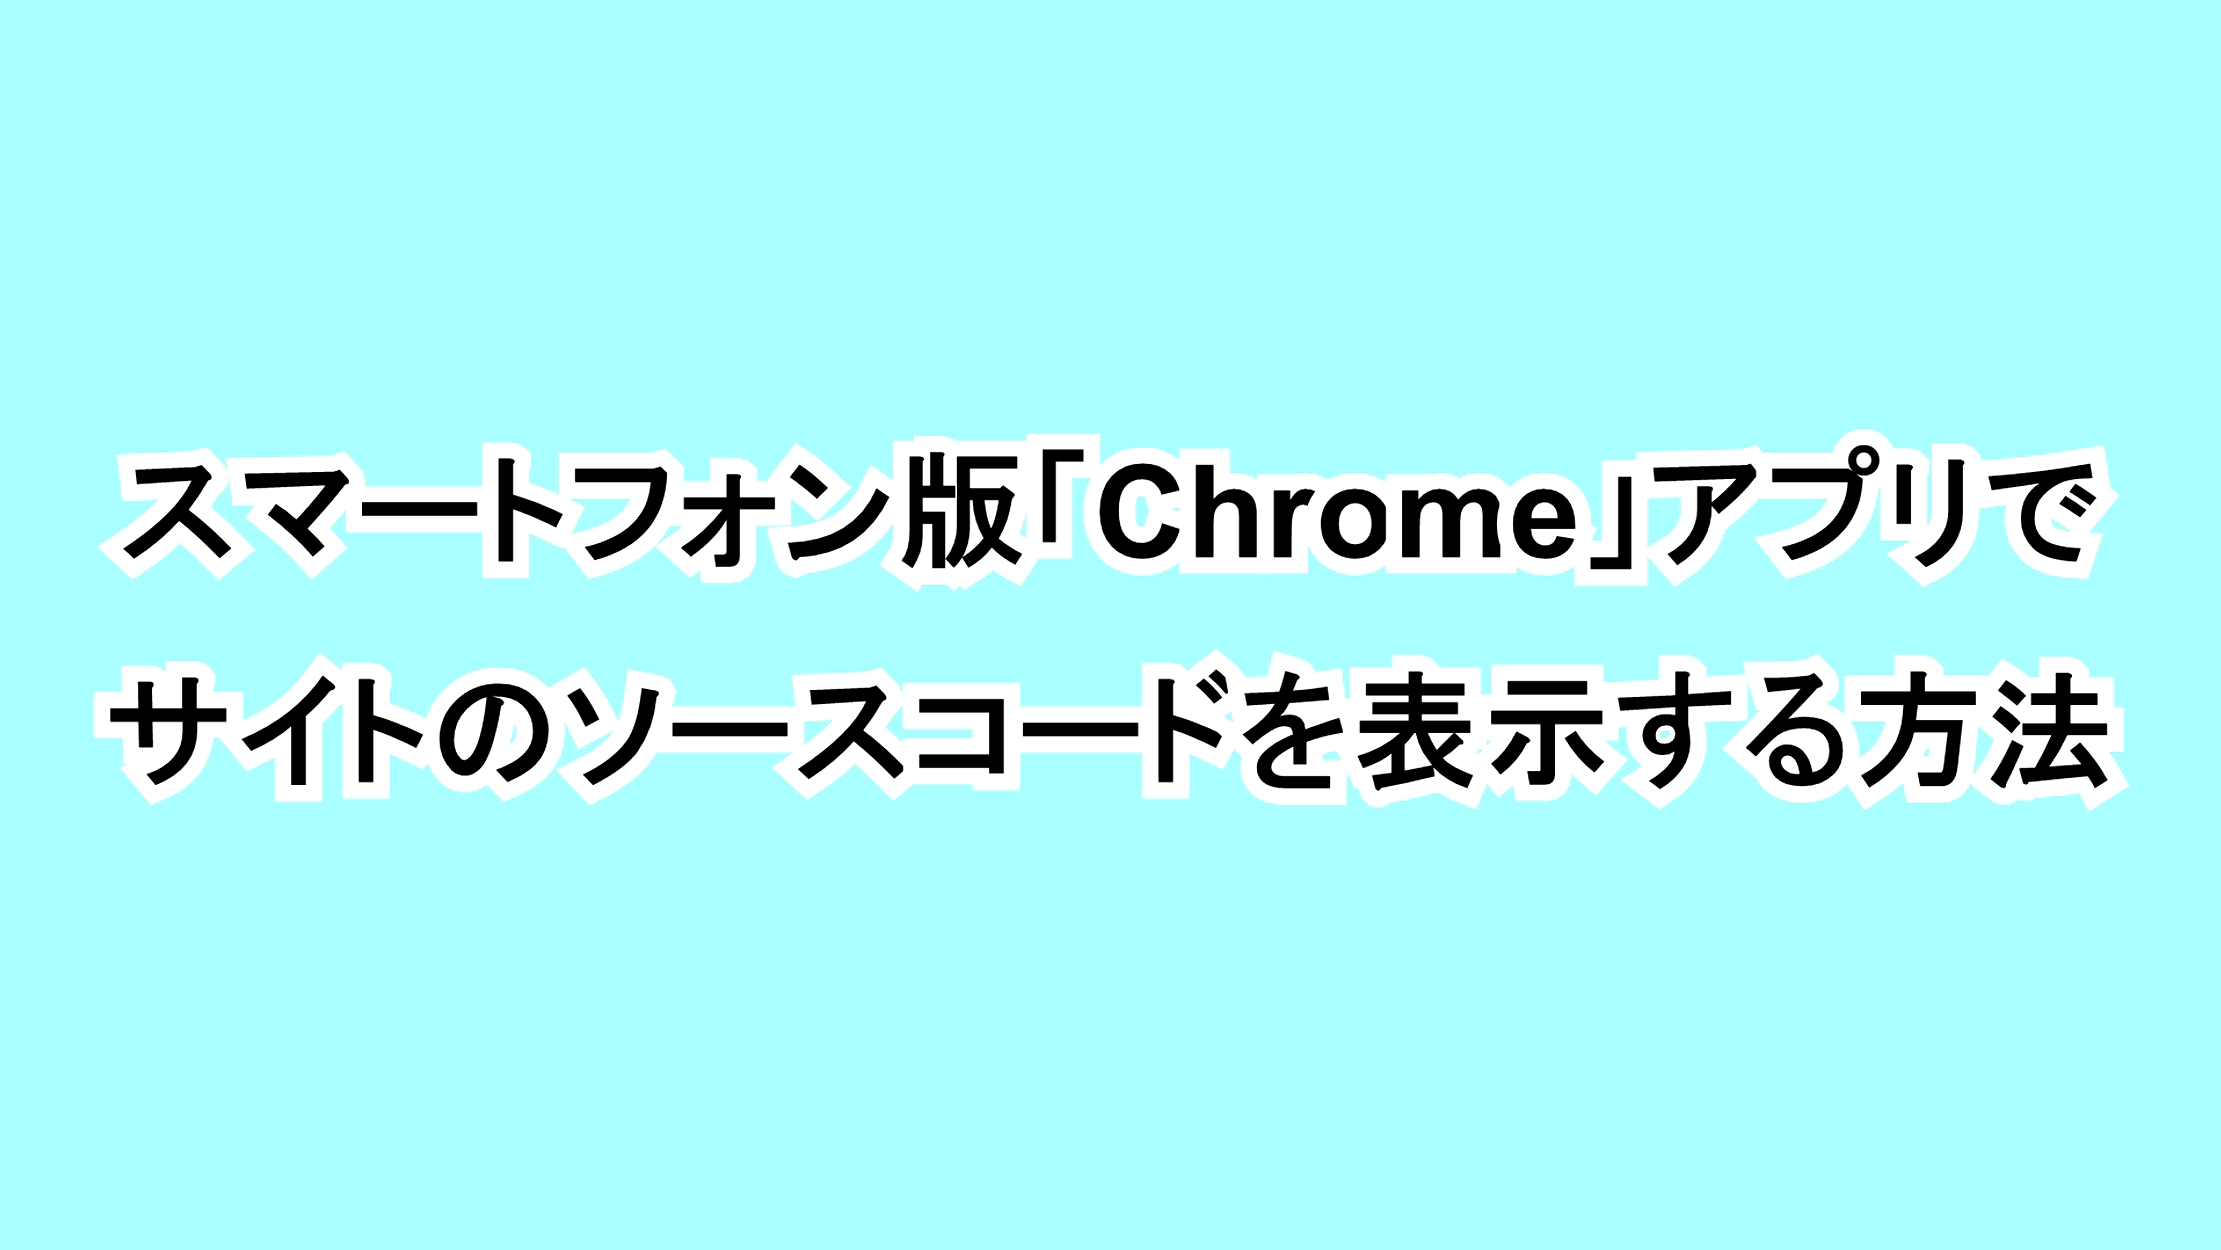 スマートフォン版「Chrome」アプリでサイトのソースコードを表示する方法